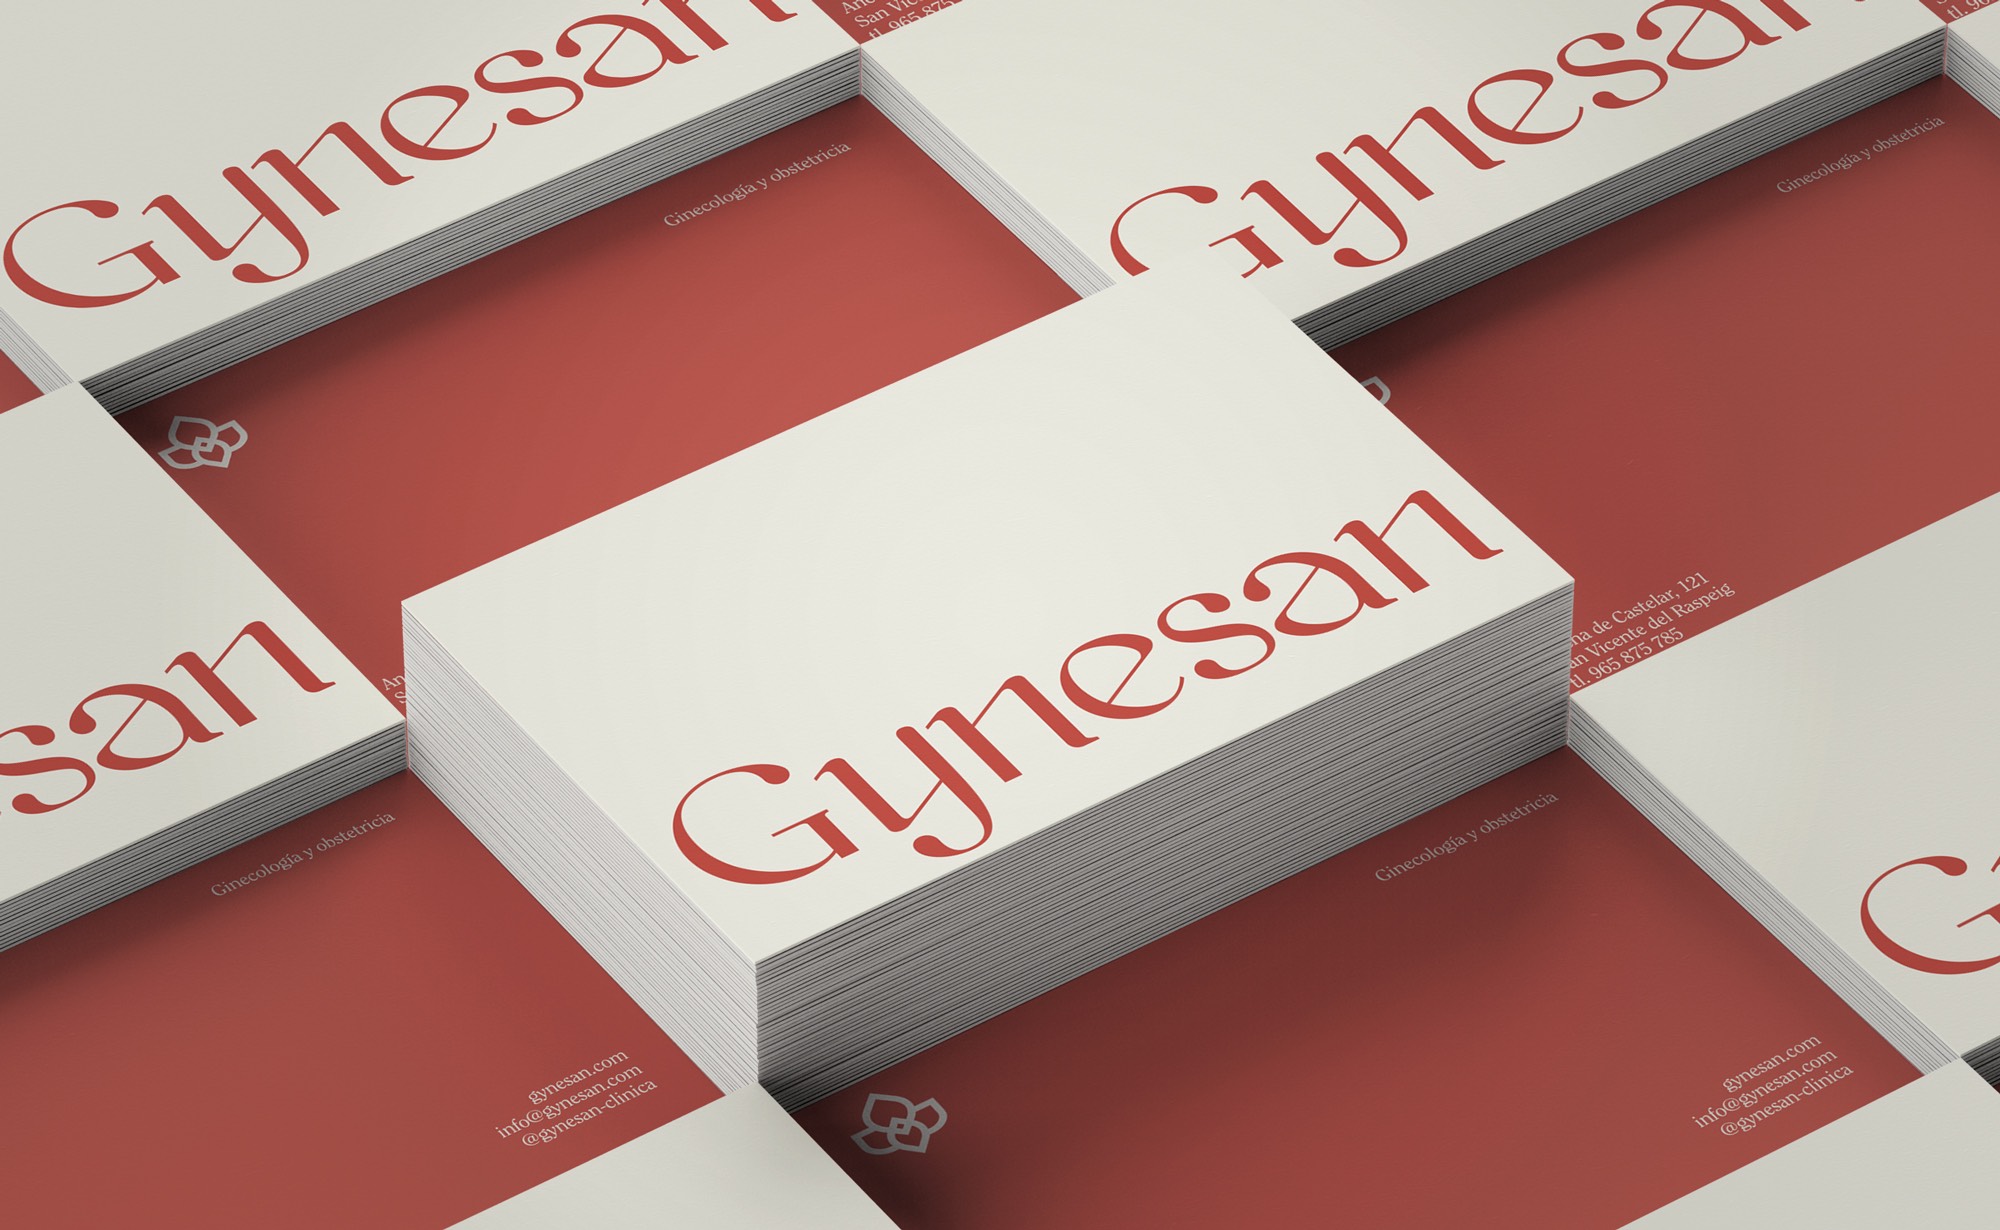 Diseño y desarrollo de identidad visual corporativa para Gynesan. Detalle tarjetas de visita.